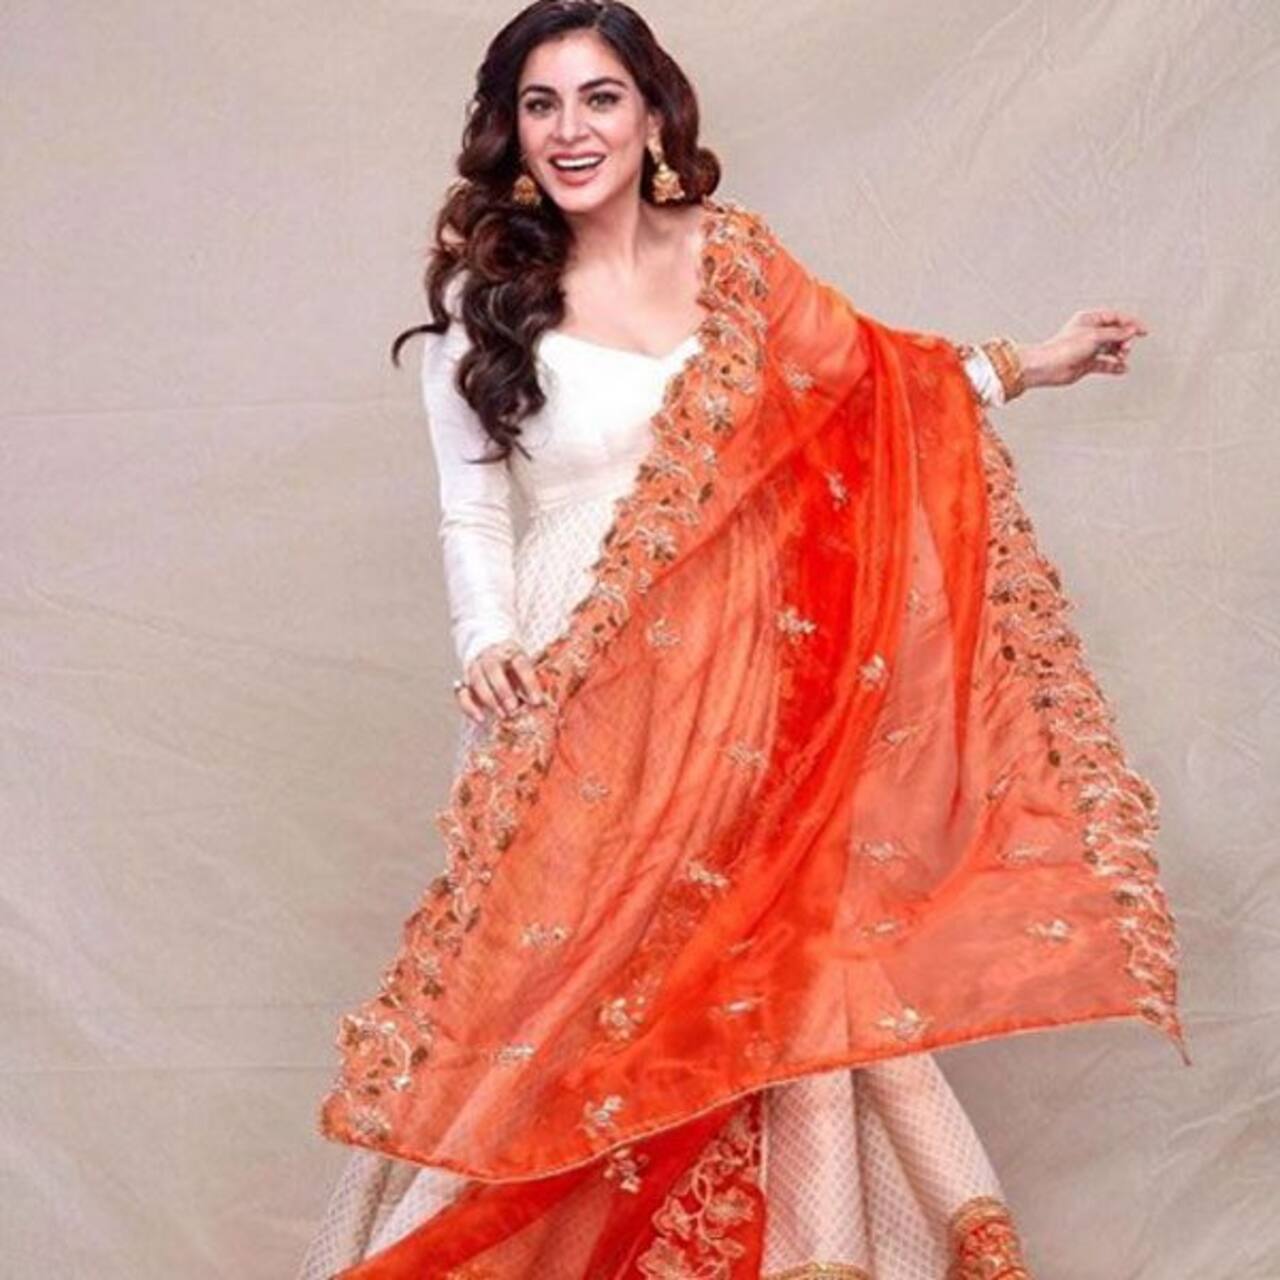 Kundali Bhagya Actress Shraddha Arya Looks Amazing In This Orange And White Suit 4030